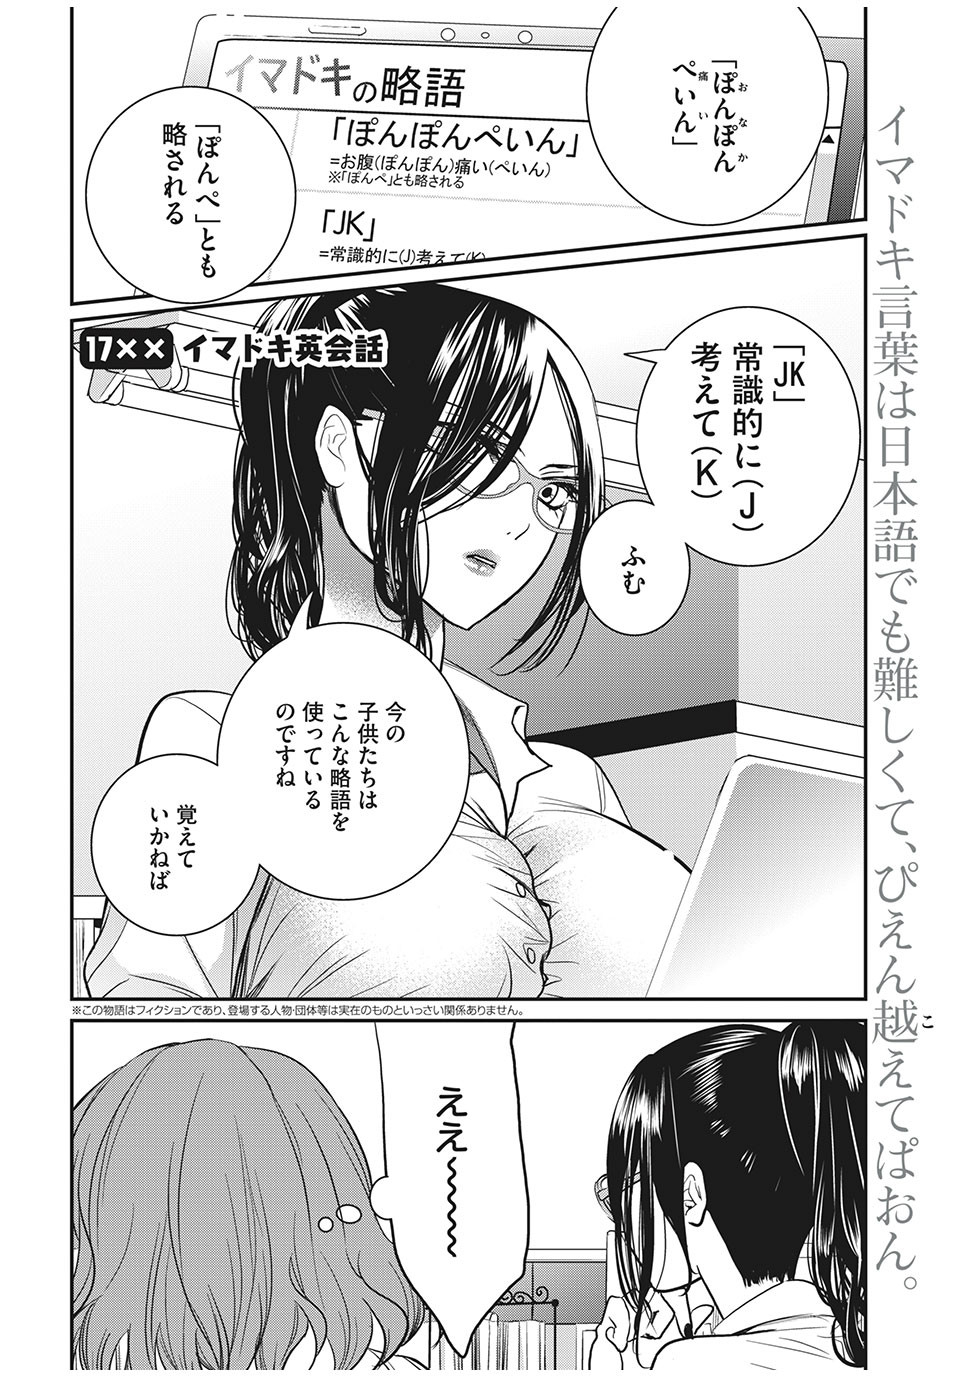 Eigo ×× Sensei - Chapter 17 - Page 2